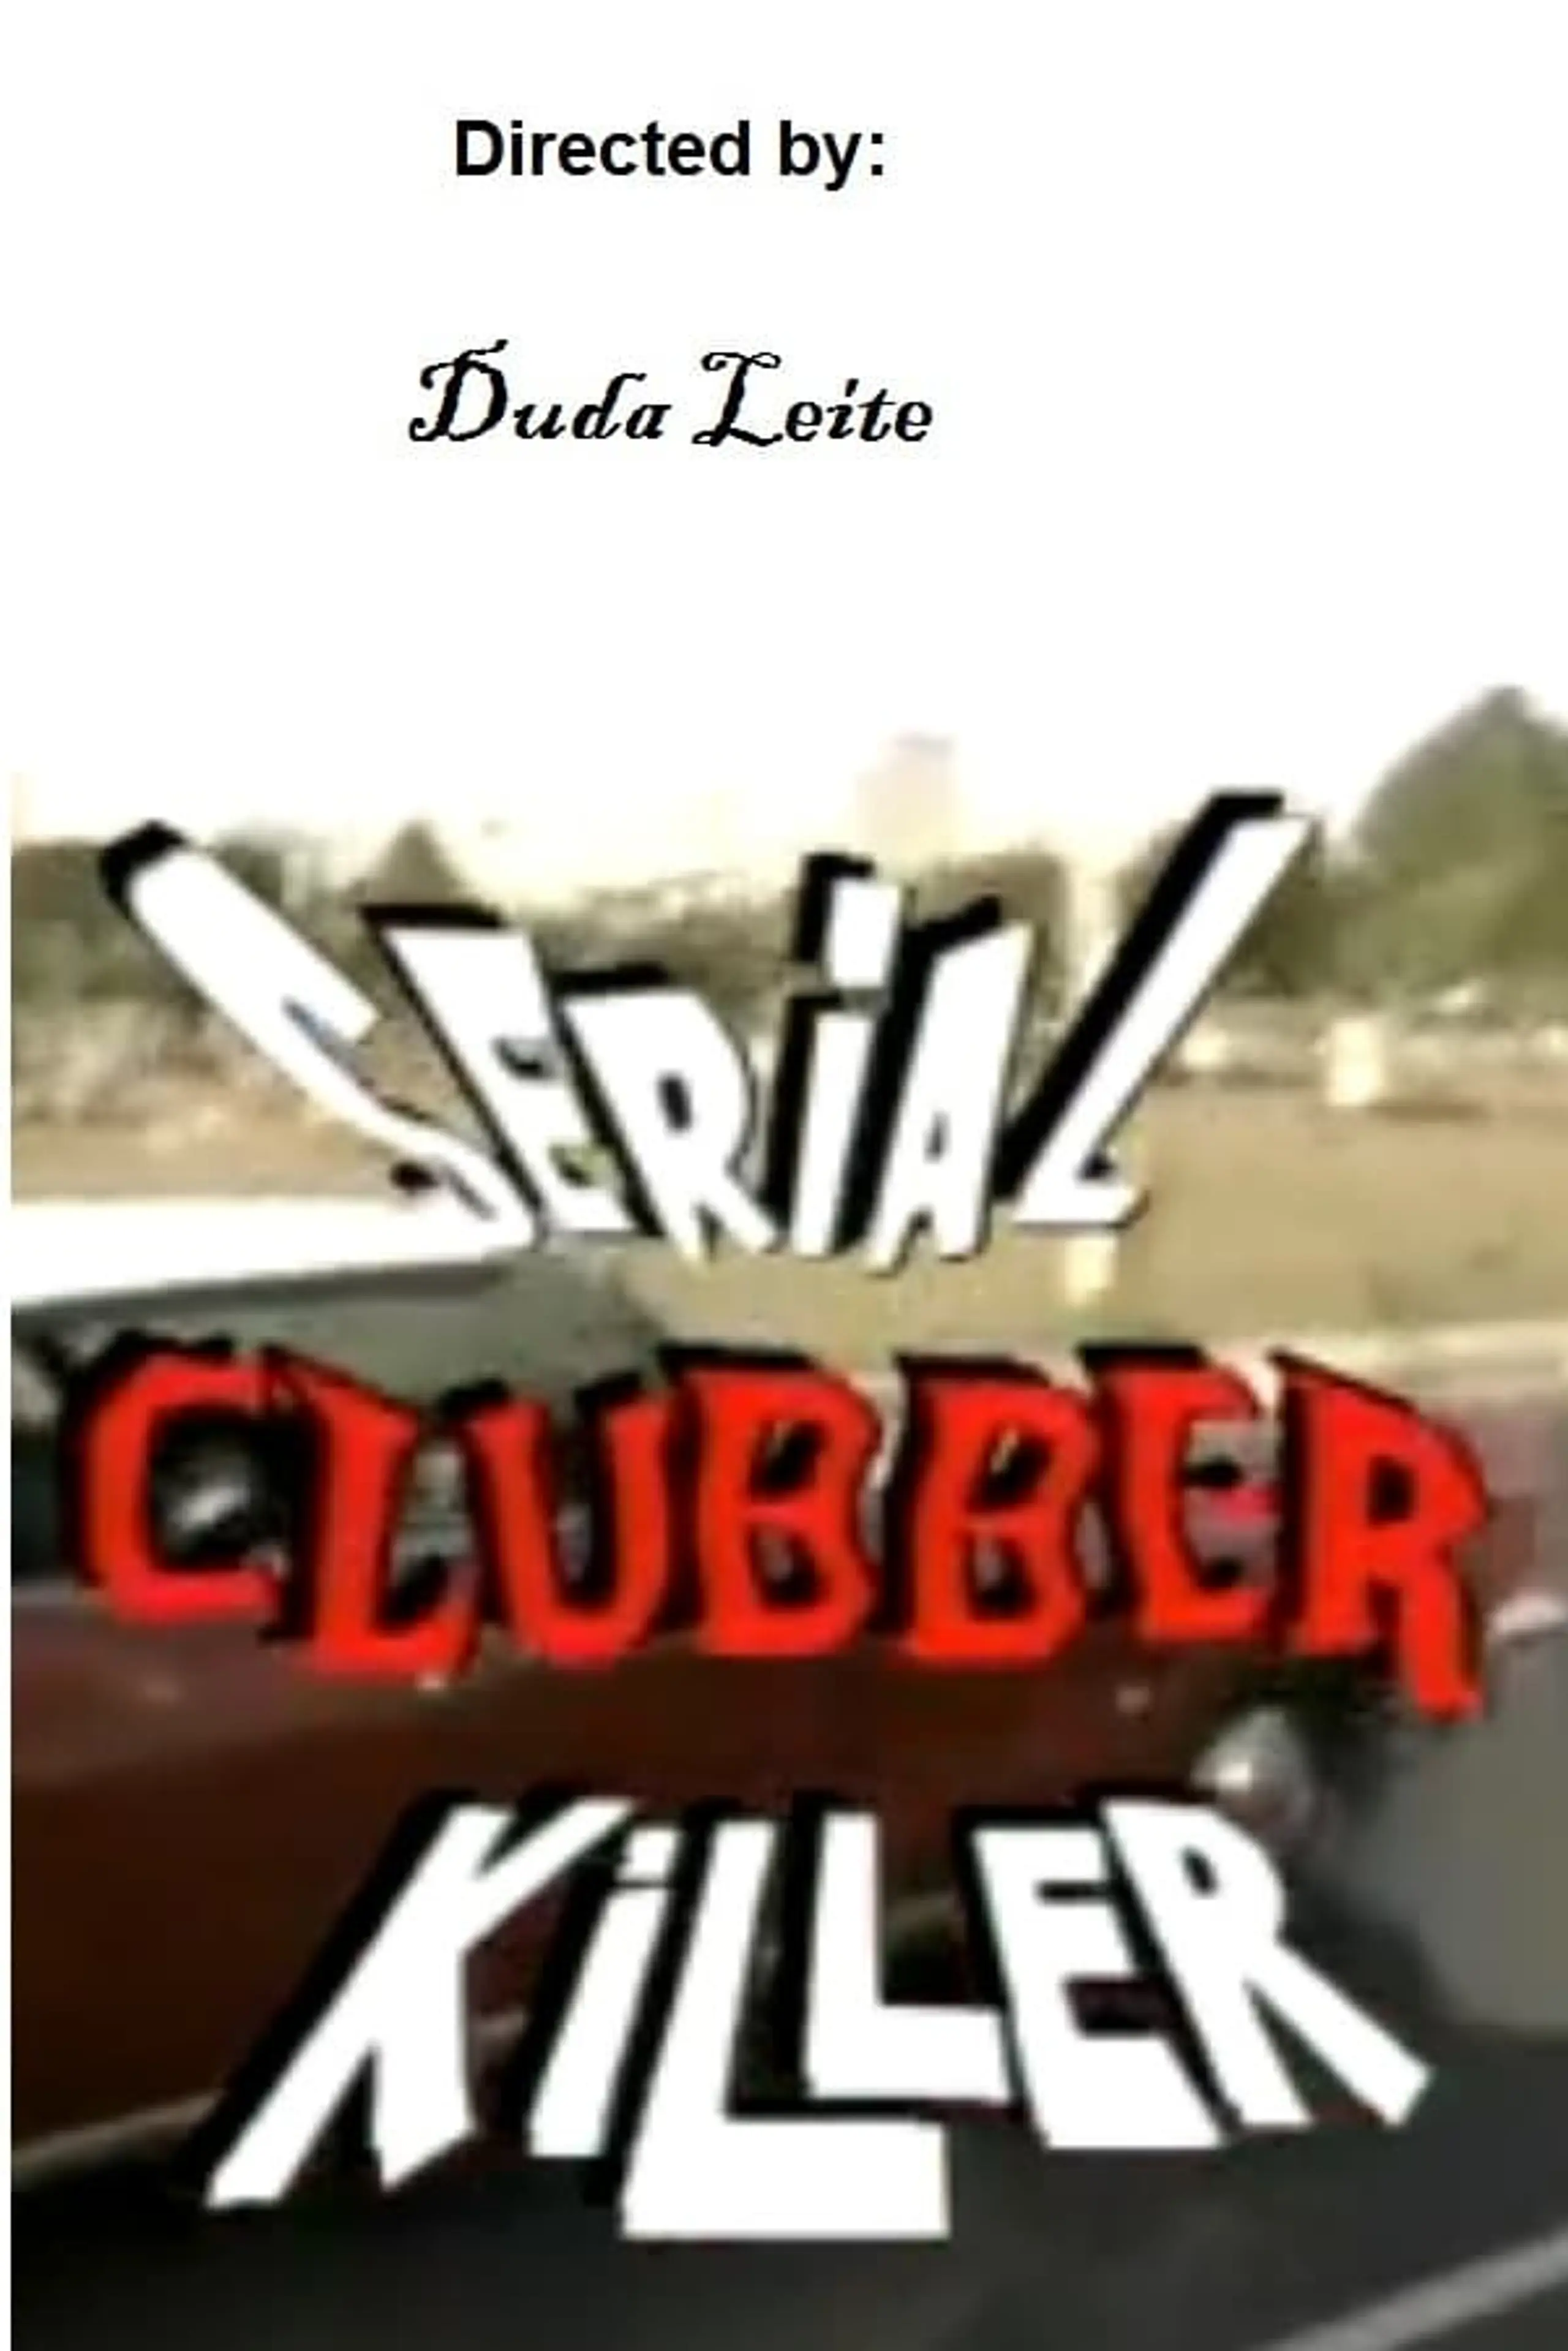 Serial Clubber Killer